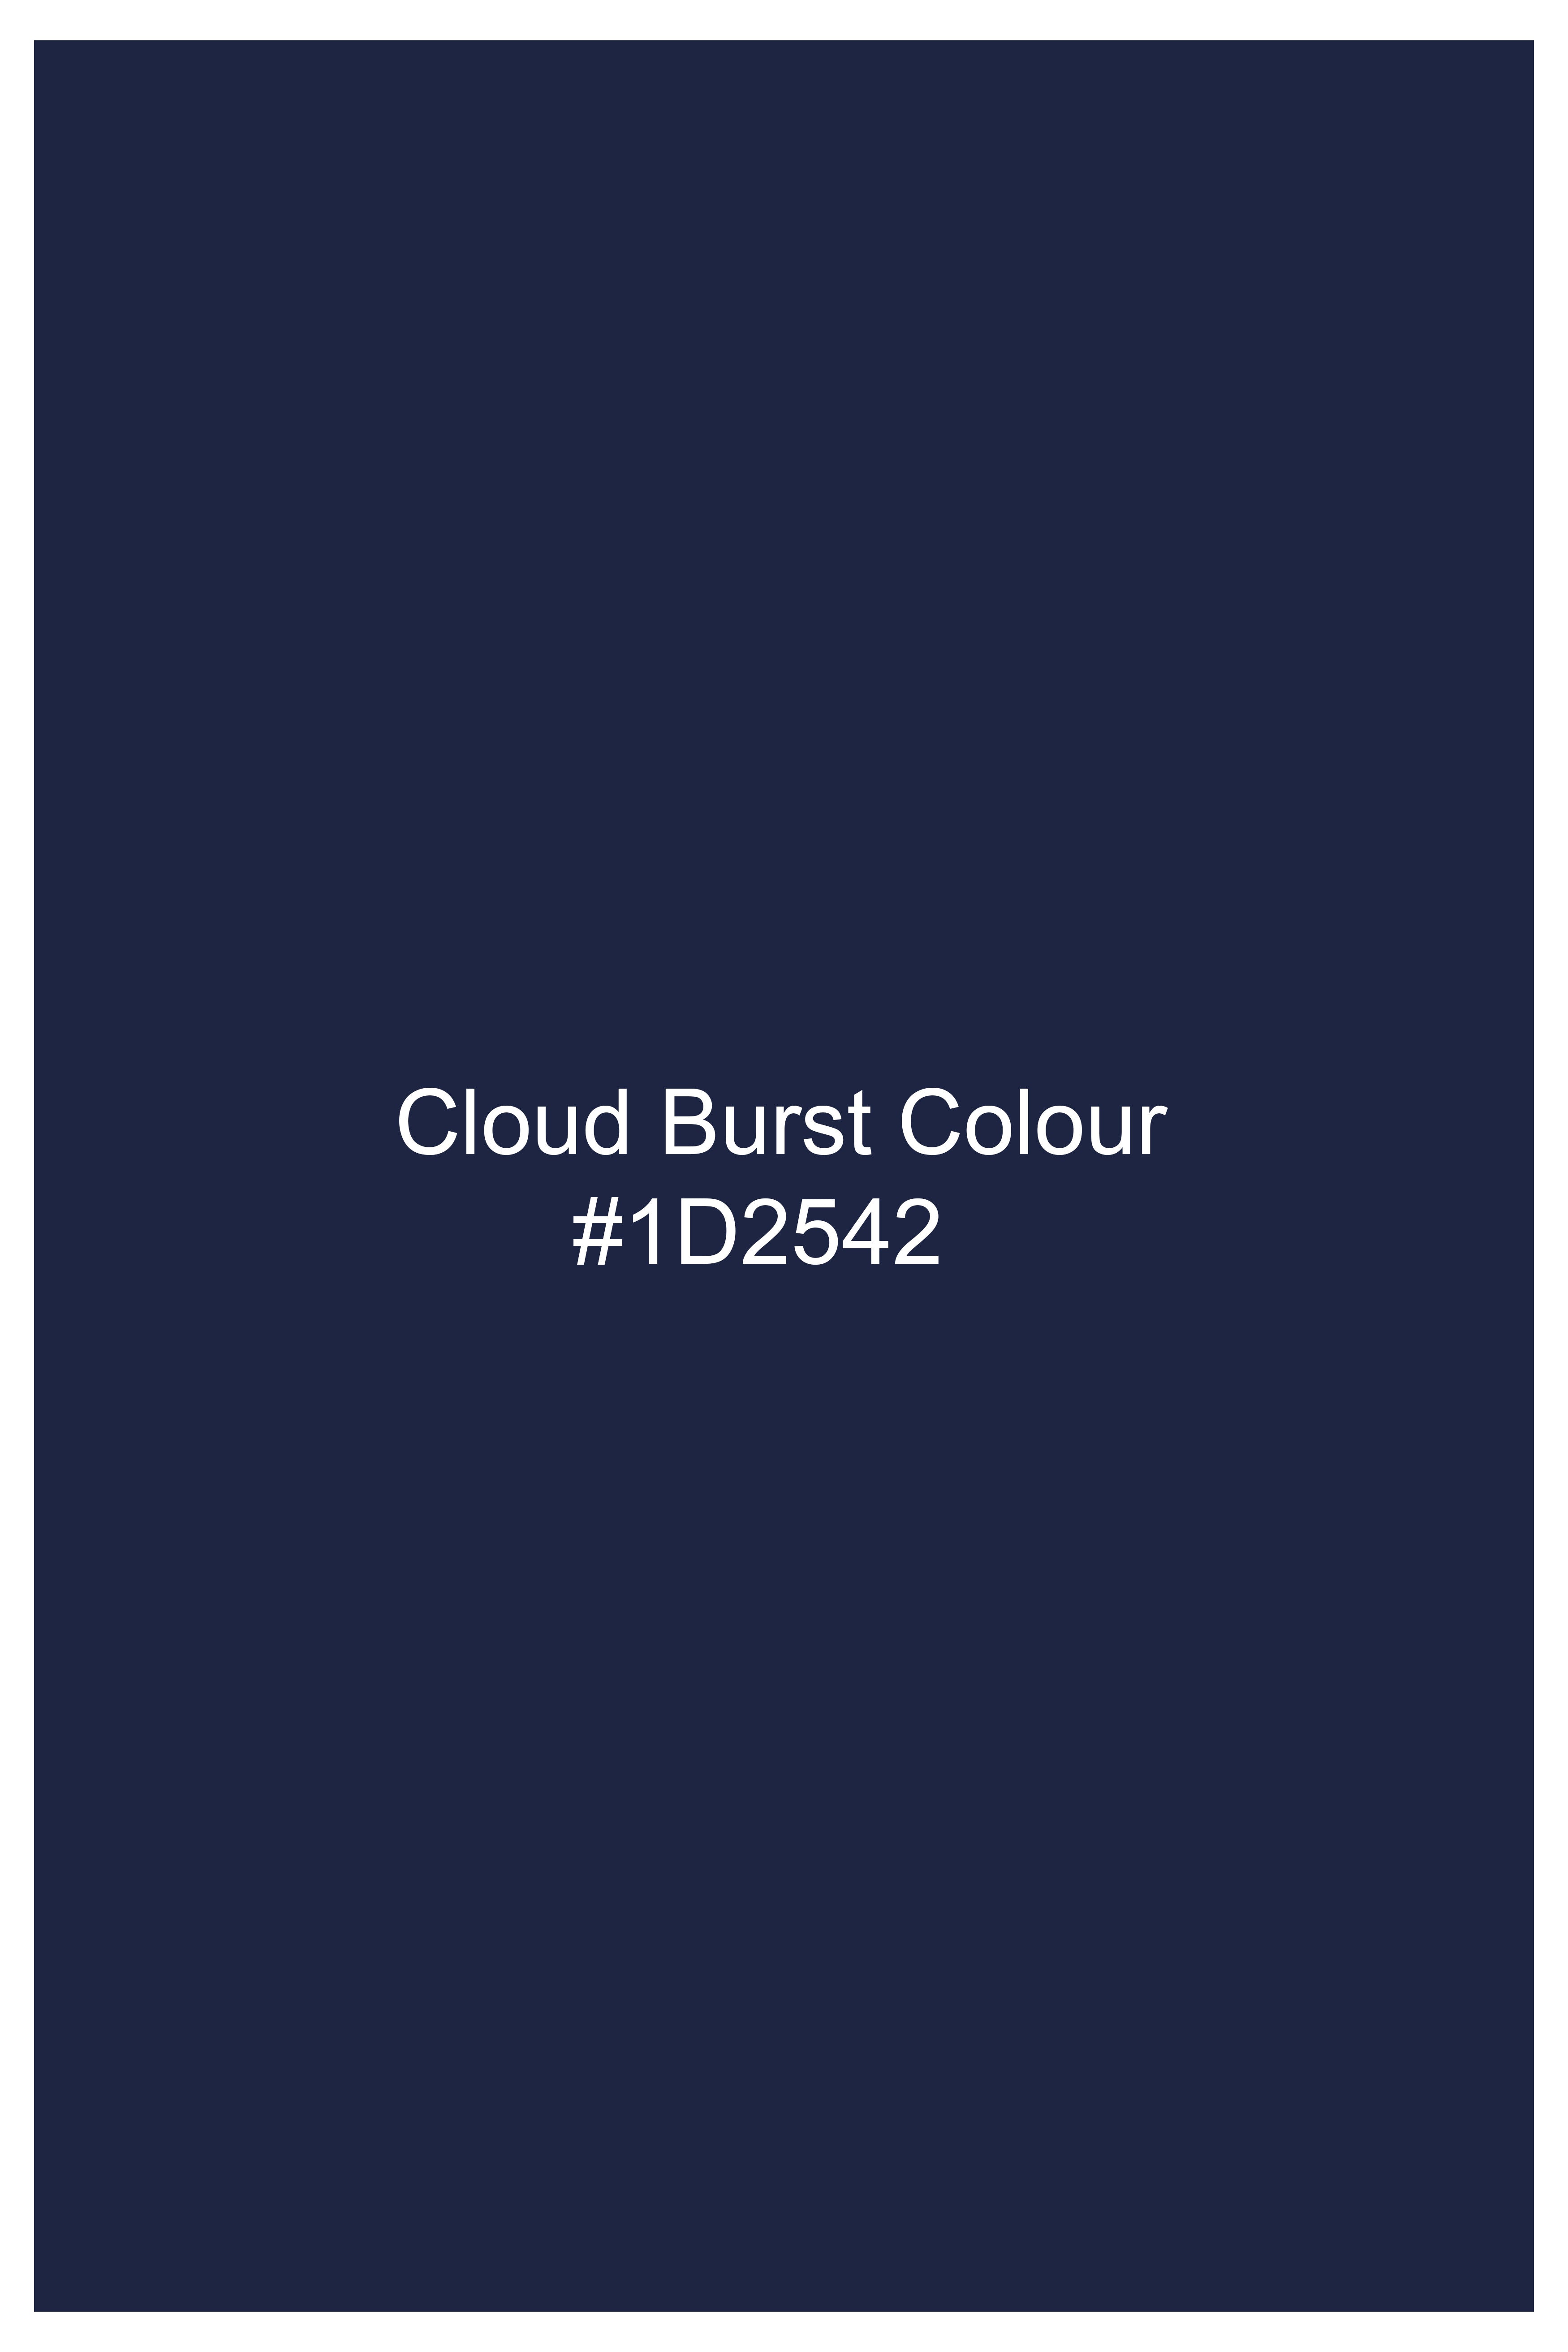 Cloud Burst Blue Cross Buttoned Wool Rich Bandhgala Blazer BL3061-CBG2-36, BL3061-CBG2-38, BL3061-CBG2-40, BL3061-CBG2-42, BL3061-CBG2-44, BL3061-CBG2-46, BL3061-CBG2-48, BL3061-CBG2-50, BL3061-CBG2-52, BL3061-CBG2-54, BL3061-CBG2-56, BL3061-CBG2-58, BL3061-CBG2-60